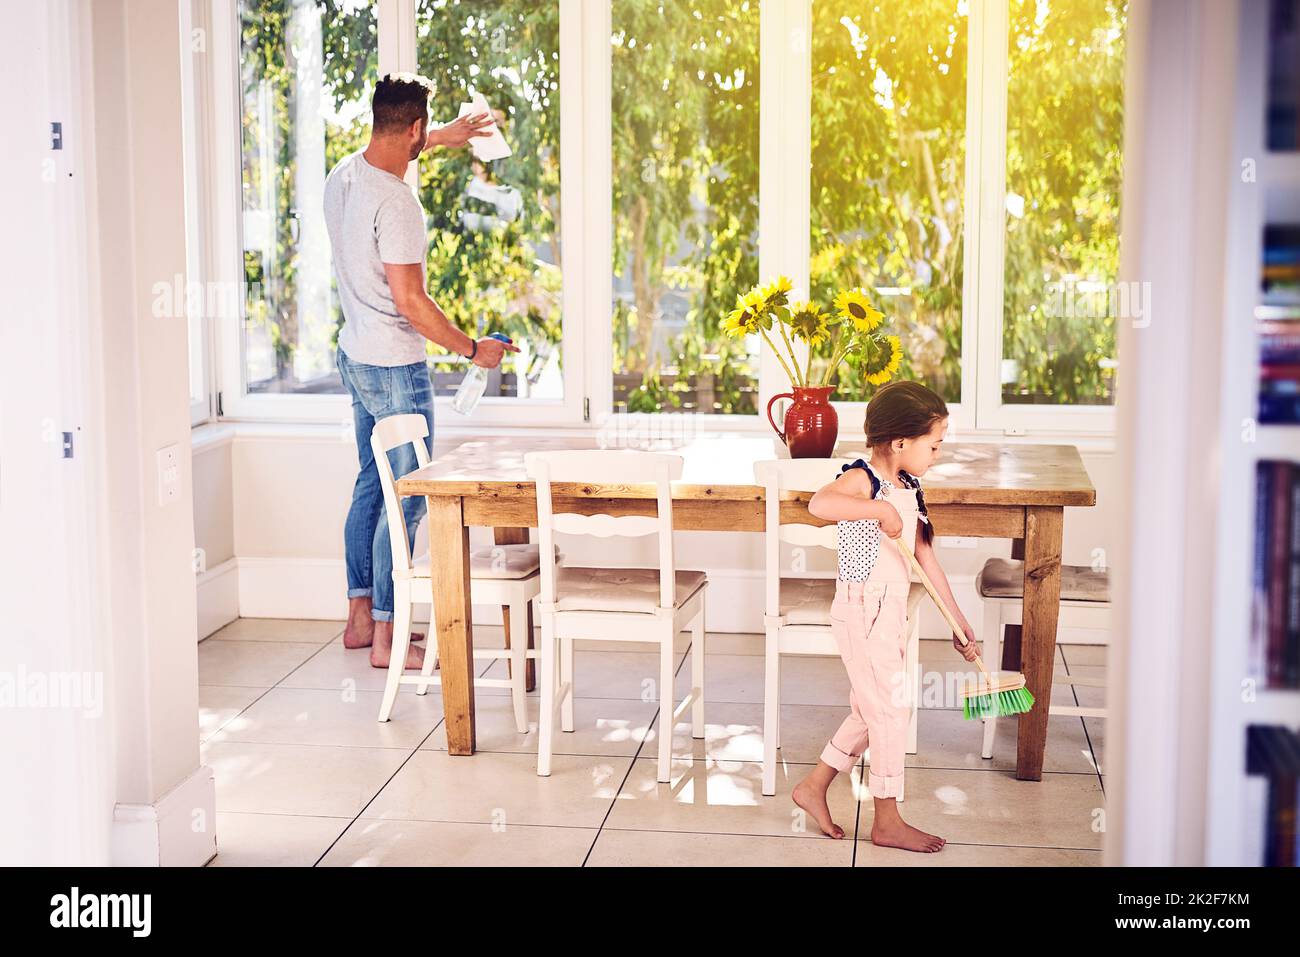 Sauberere Häuser sind glücklichere Häuser. Aufnahme eines Vaters und seiner kleinen Tochter, die zu Hause gemeinsam arbeiten. Stockfoto